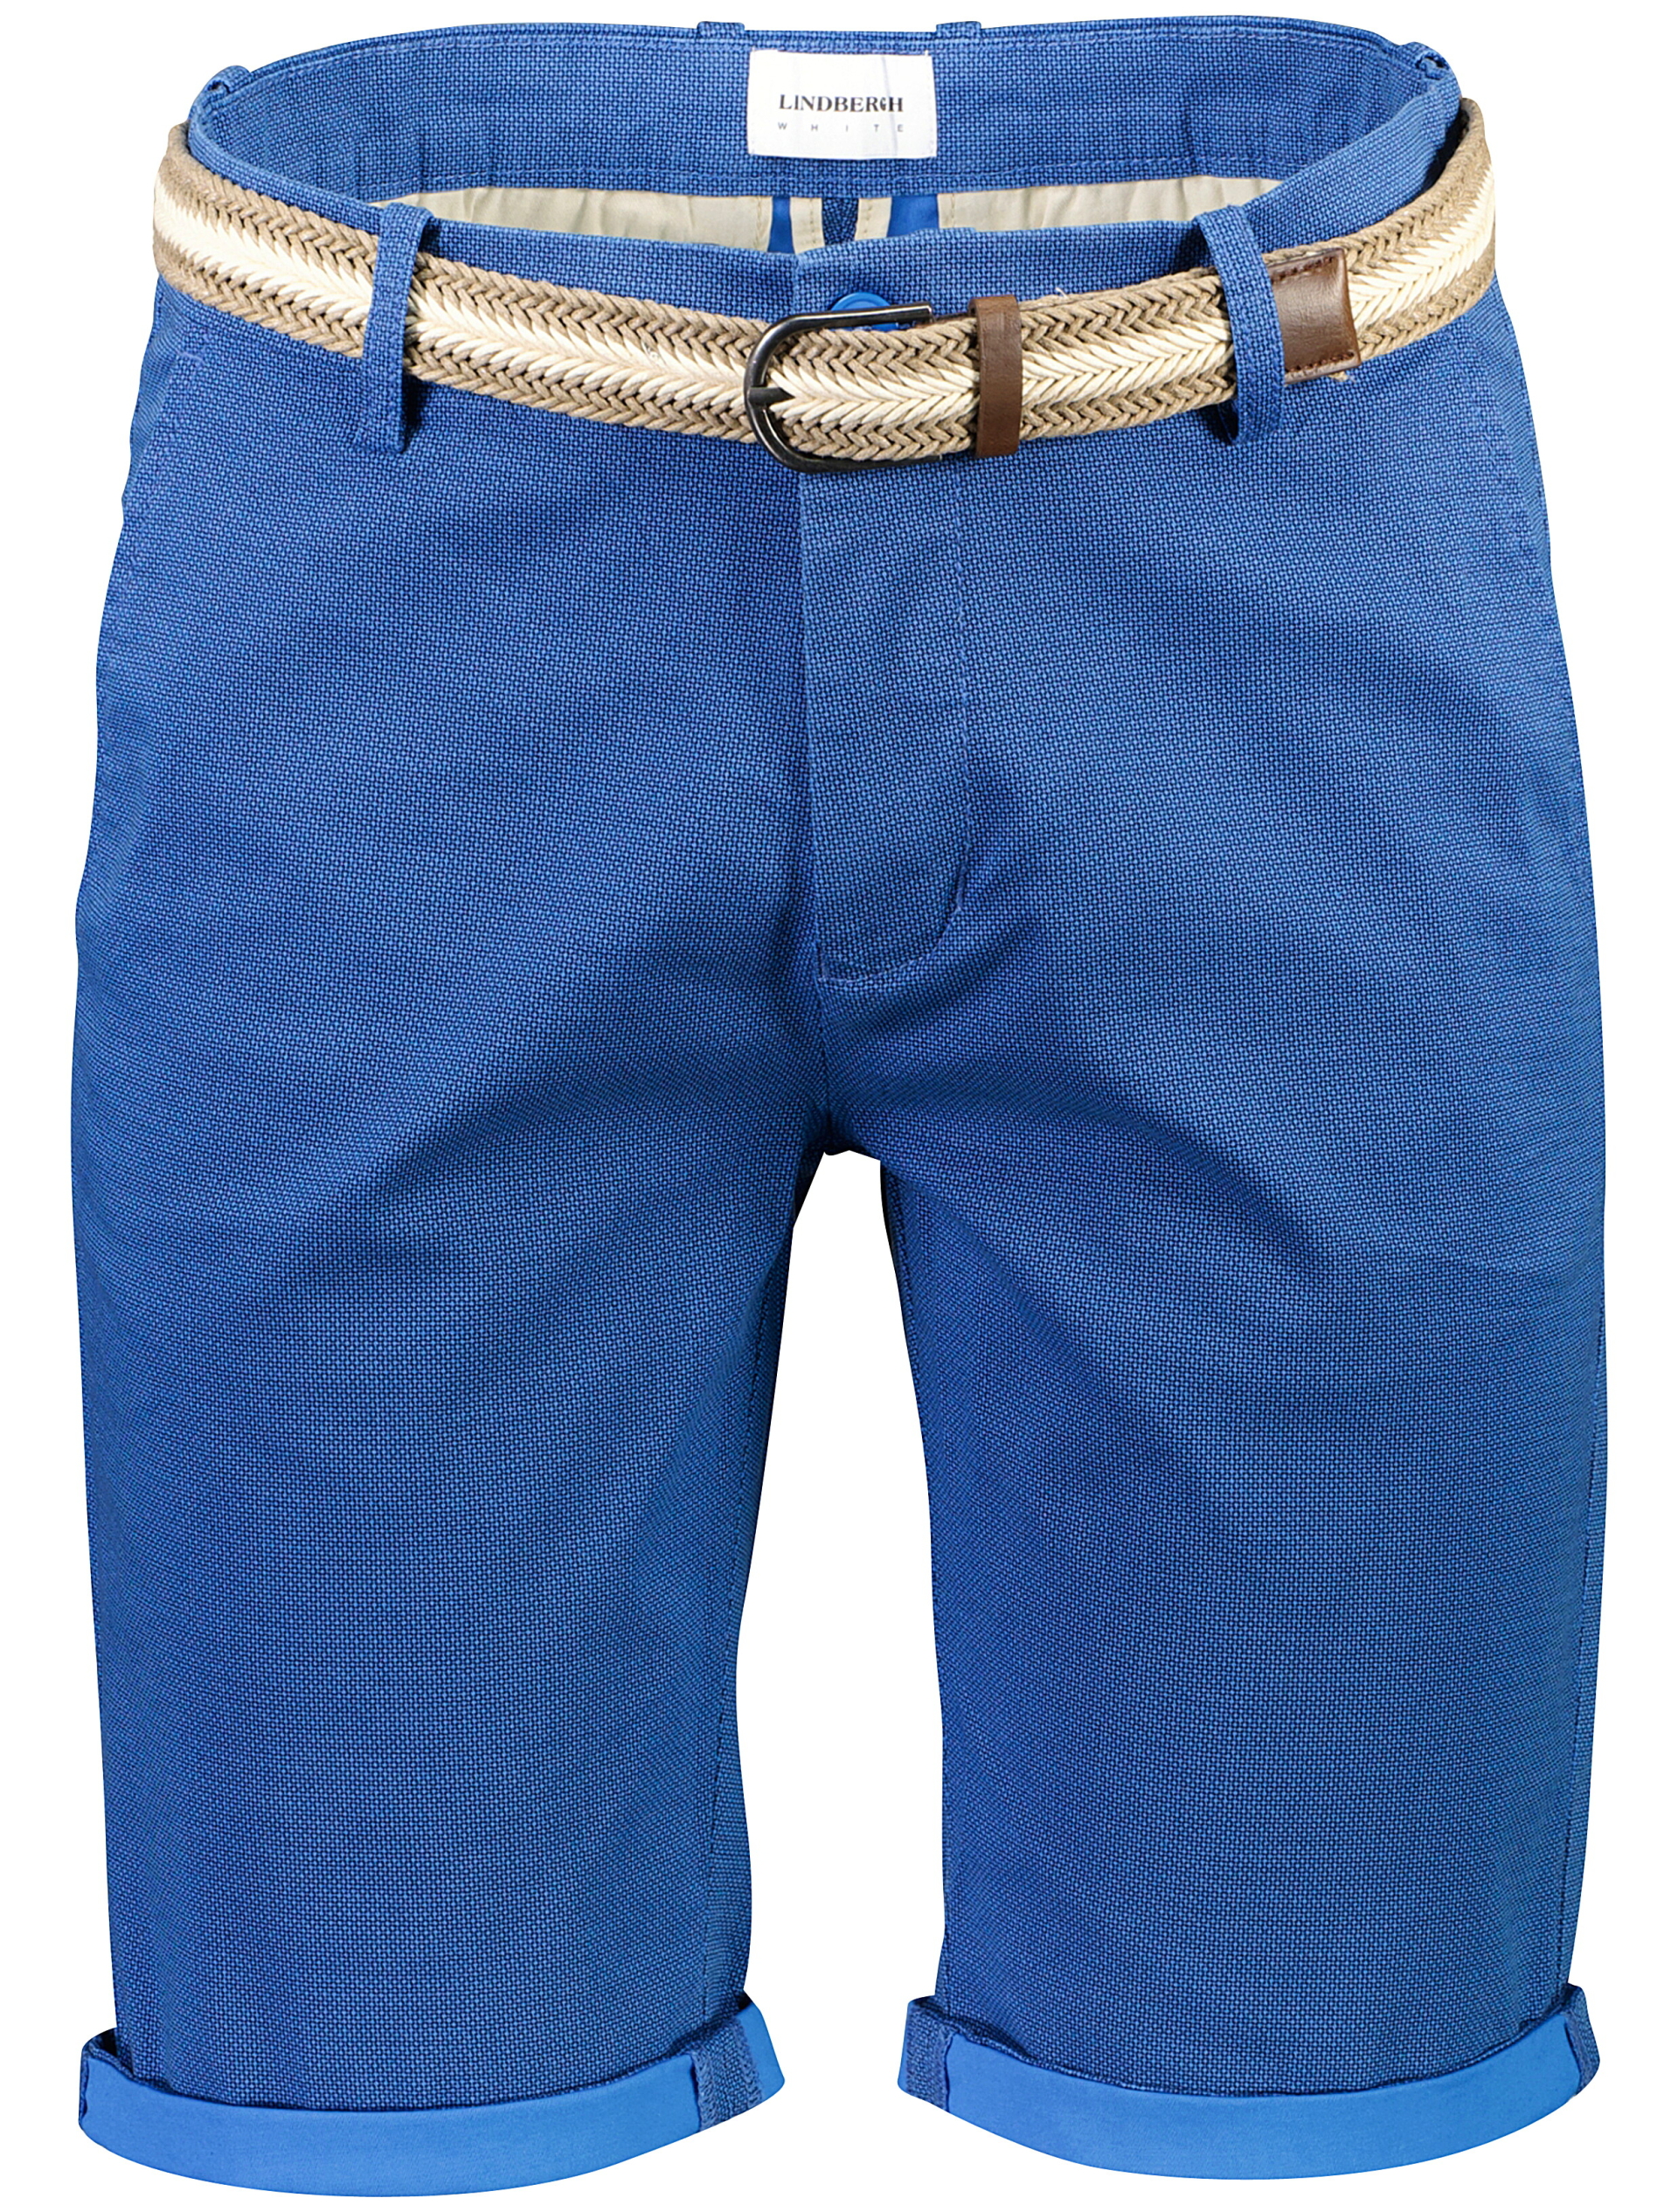 Lindbergh Chino shorts blå / true blue